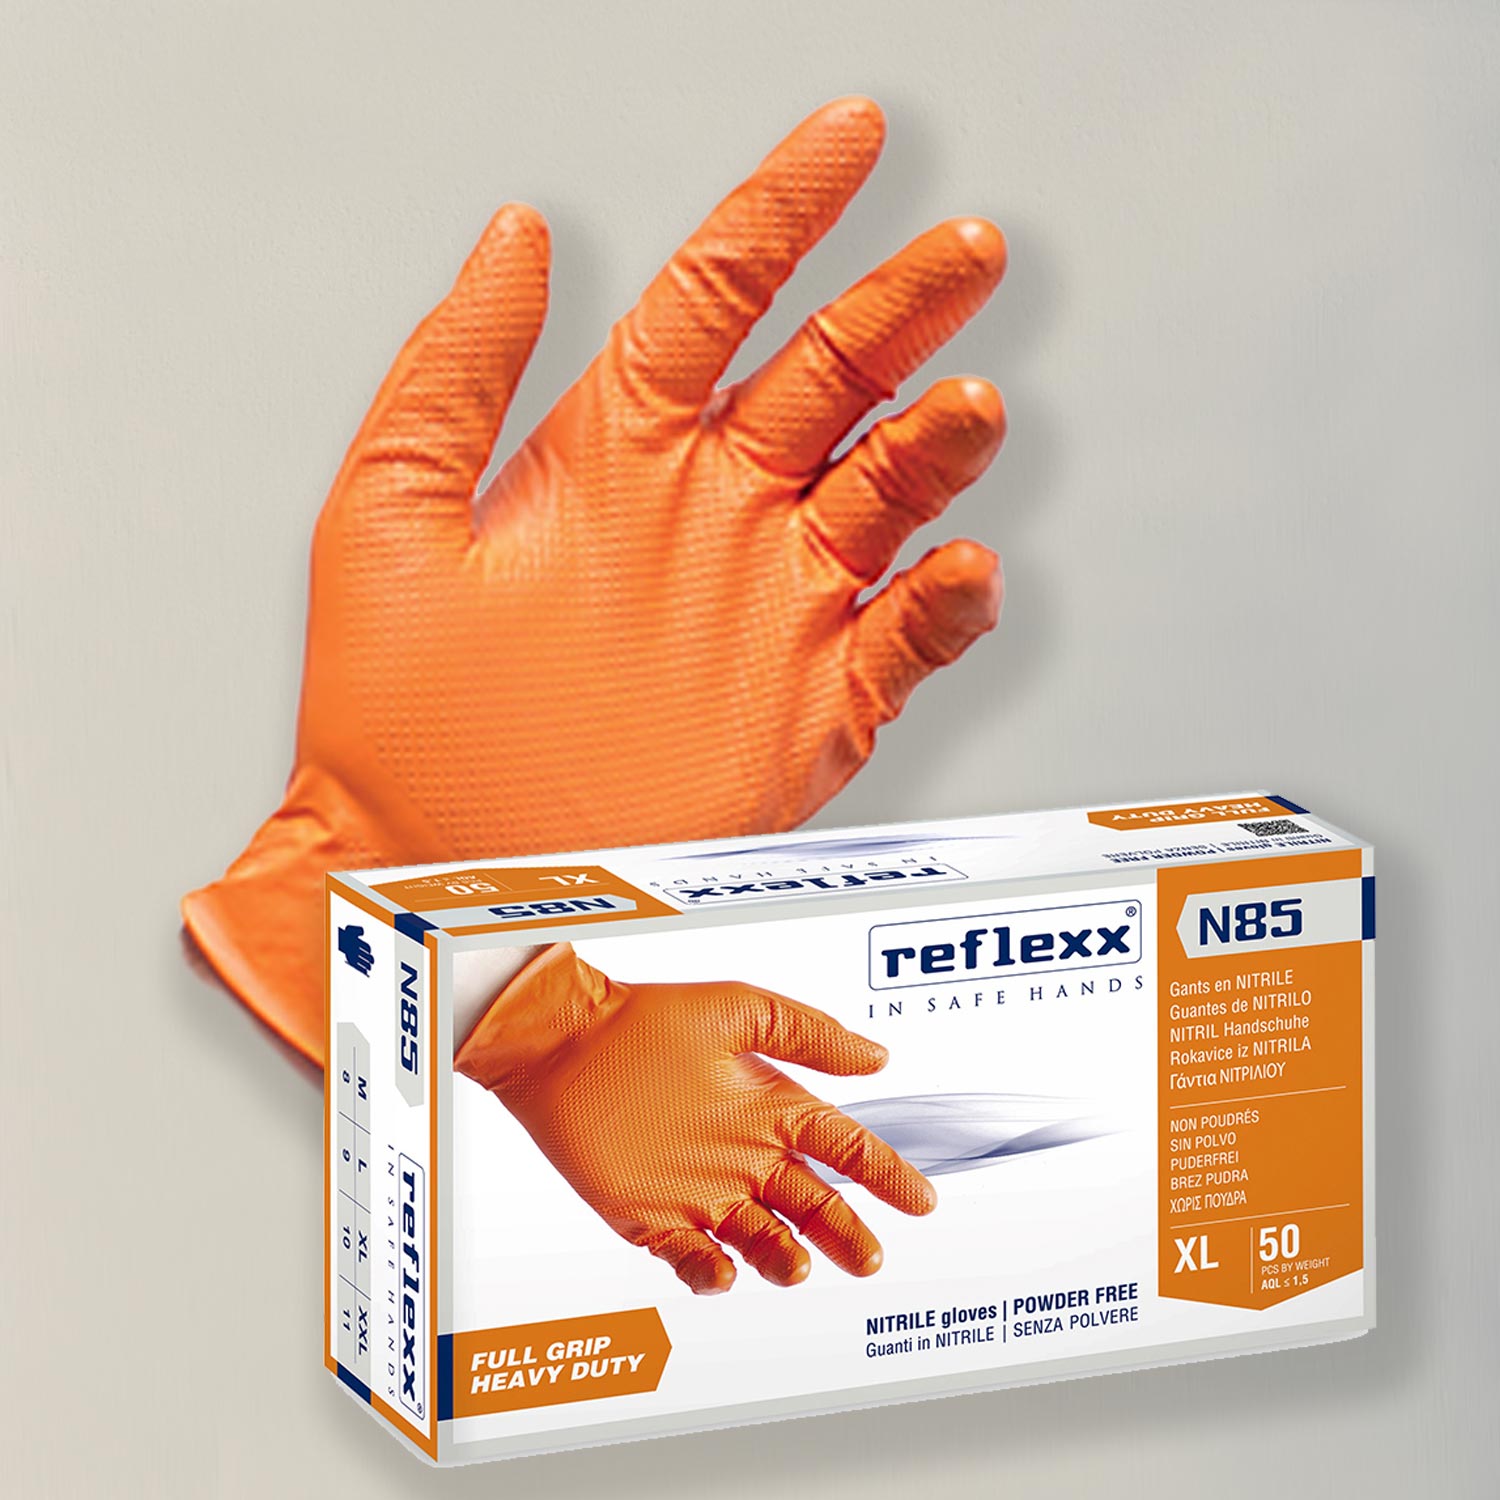 Guanti in nitrile nero reflexx n85 senza polvere full grip da 50 Pezzi gr.  8,4 ultra resistente - Guanti Nitrile Neri-Arancio - Reflexx